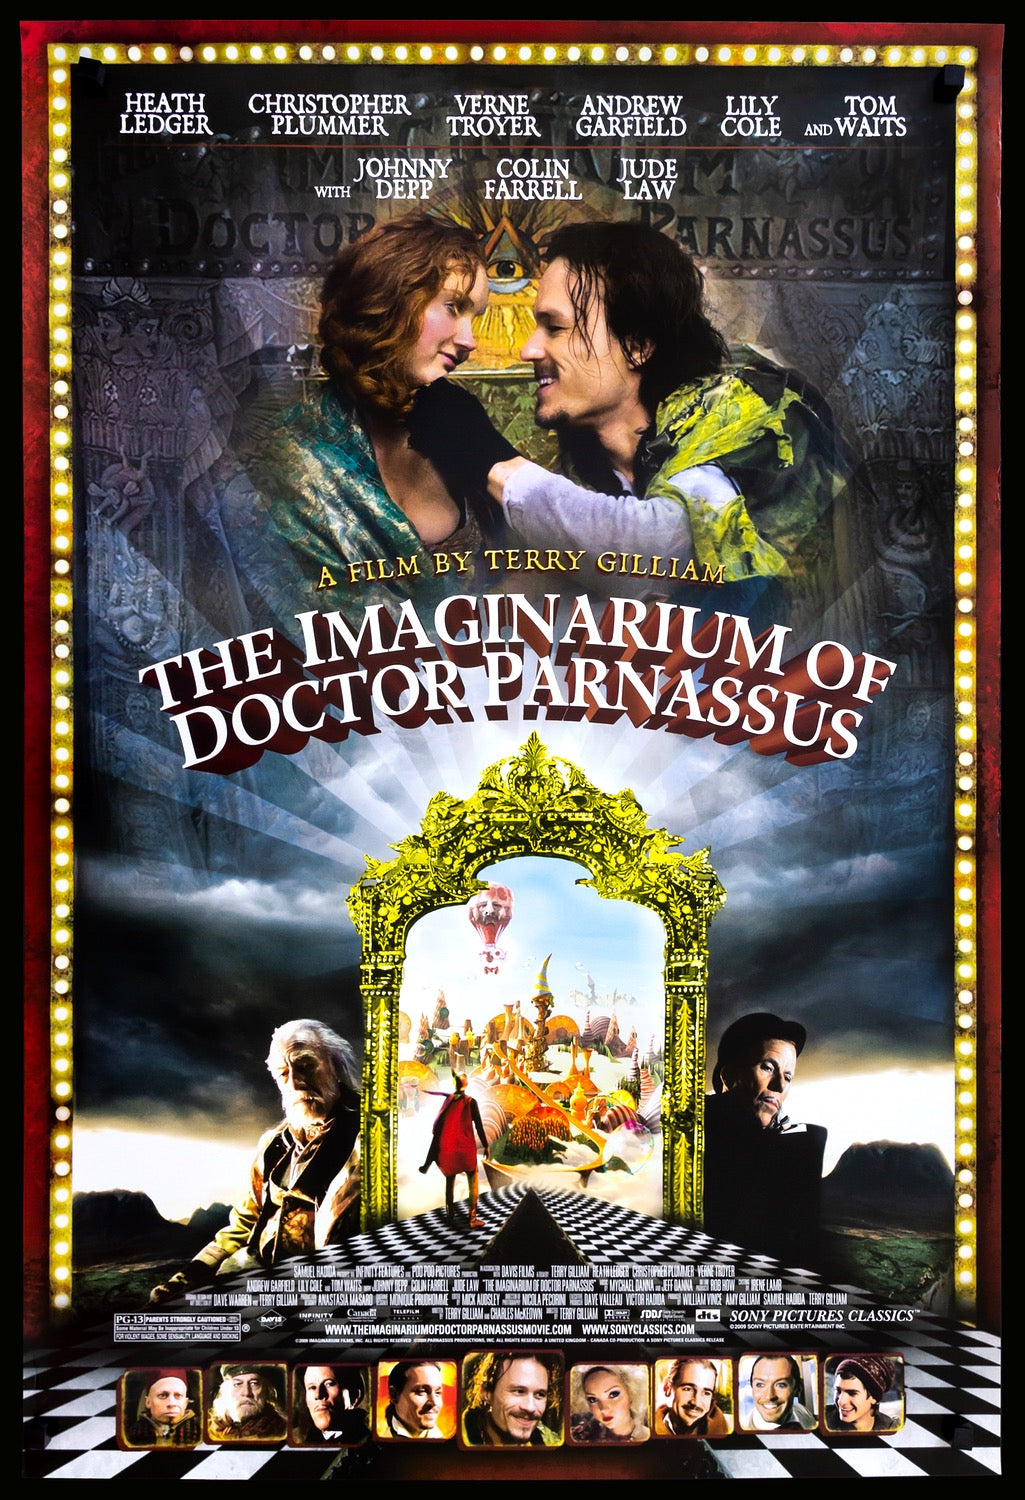 Imaginarium of Doctor Parnassus (2009) original movie poster for sale at Original Film Art